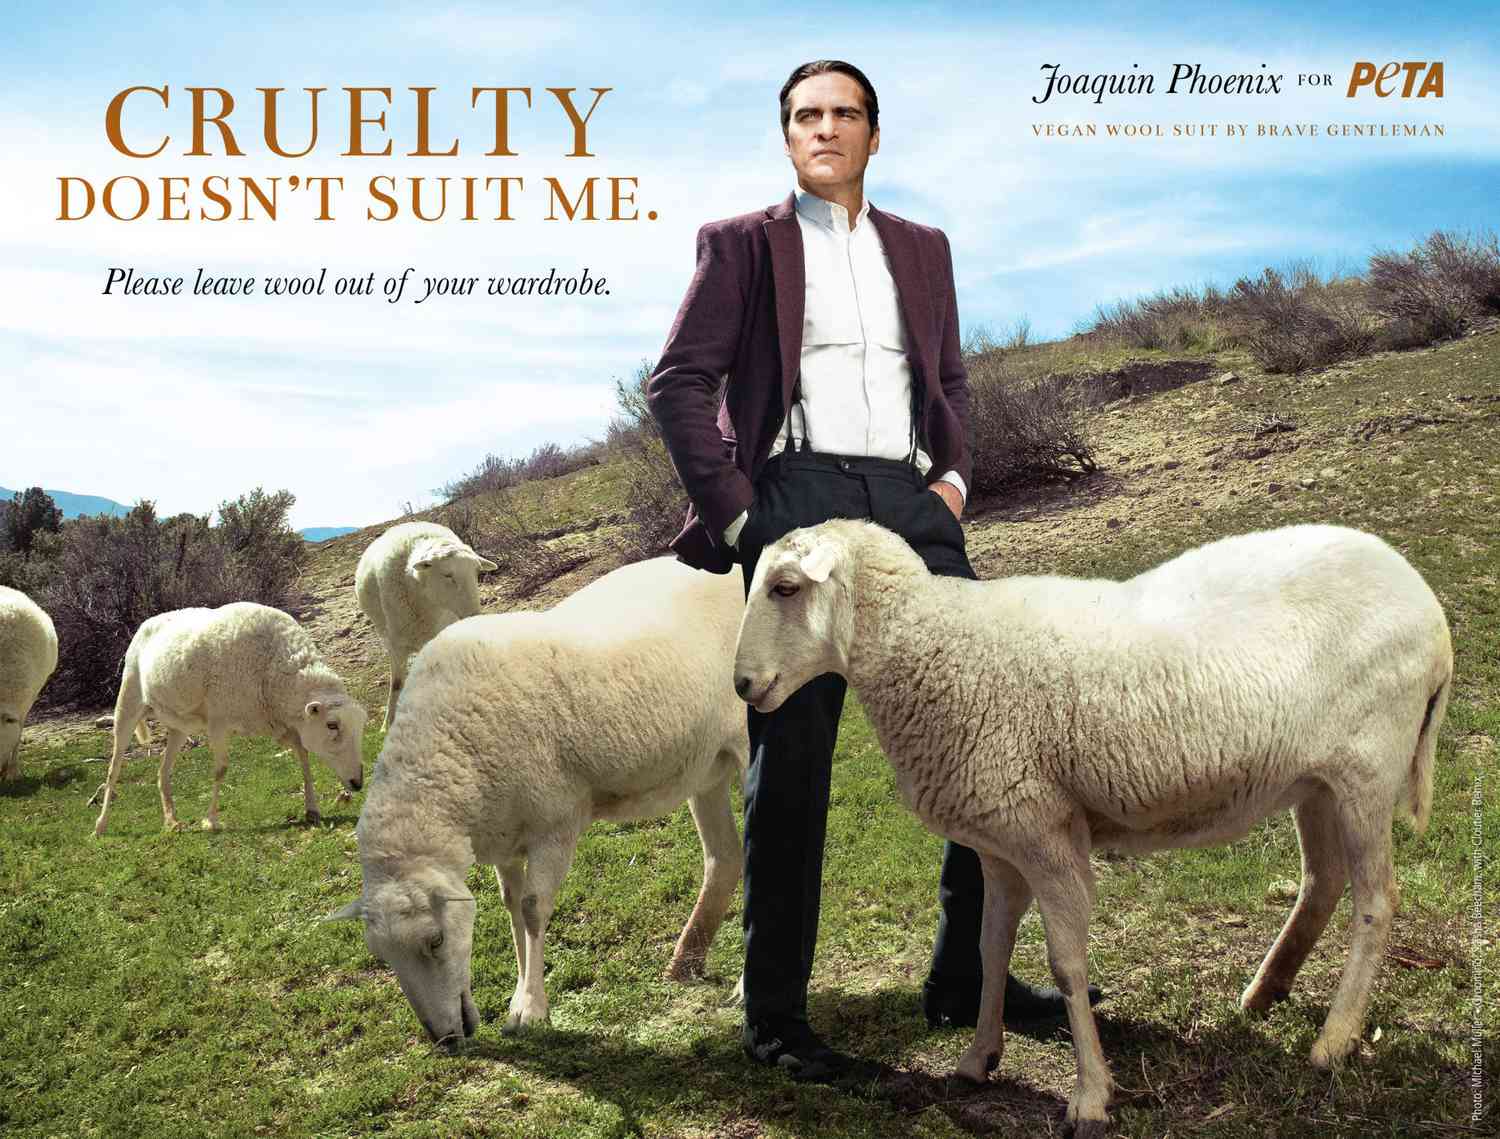 Joaquin Phoenix anti-wool PETA campaign